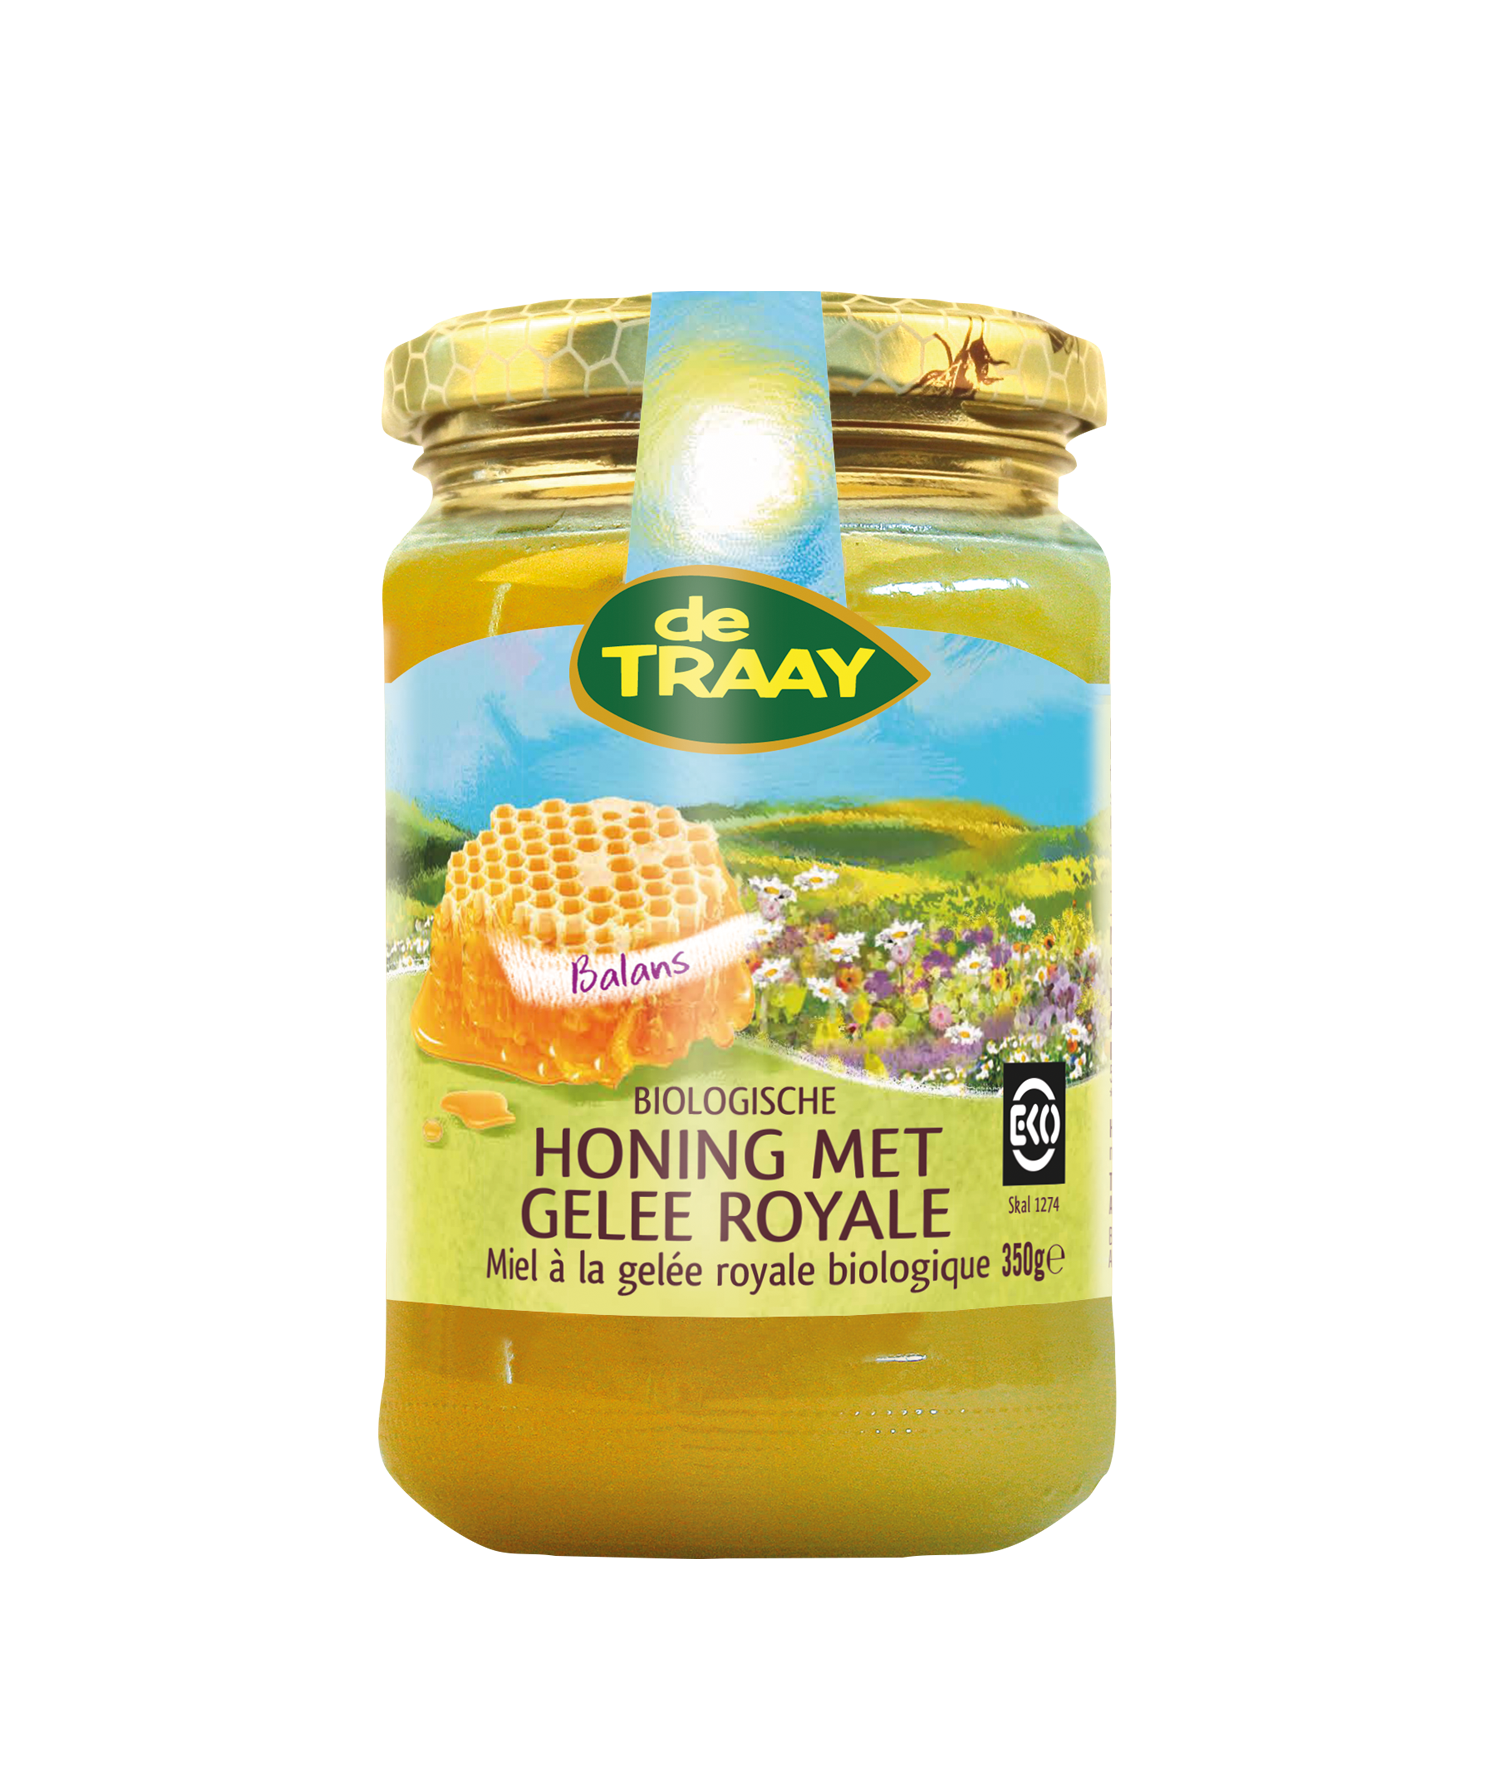 Honing met gelee royale crème van Traay, 6 x 350 g